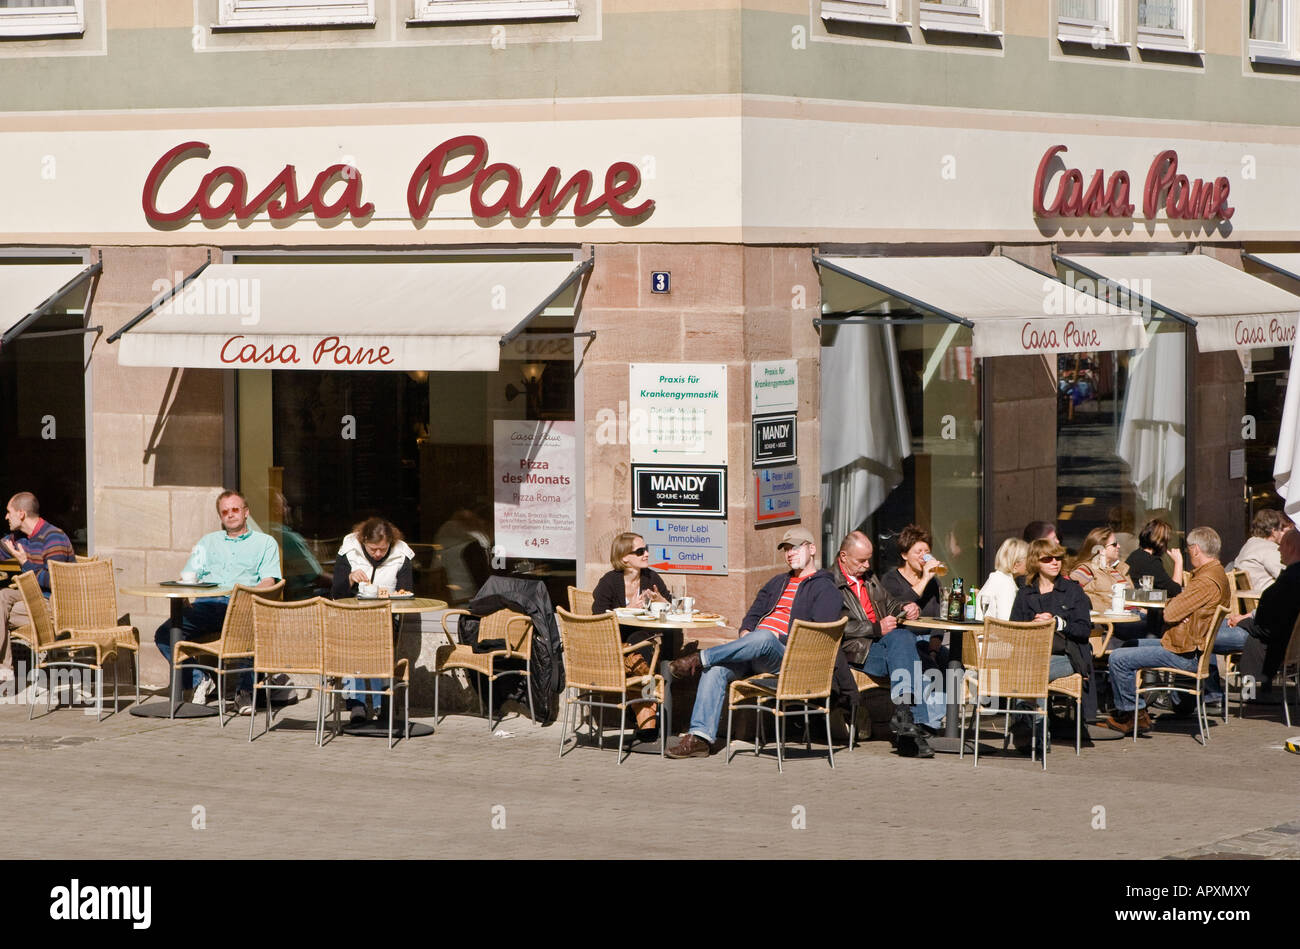 Personnes dînant dans un restaurant patio Nuernberg Allemagne Banque D'Images